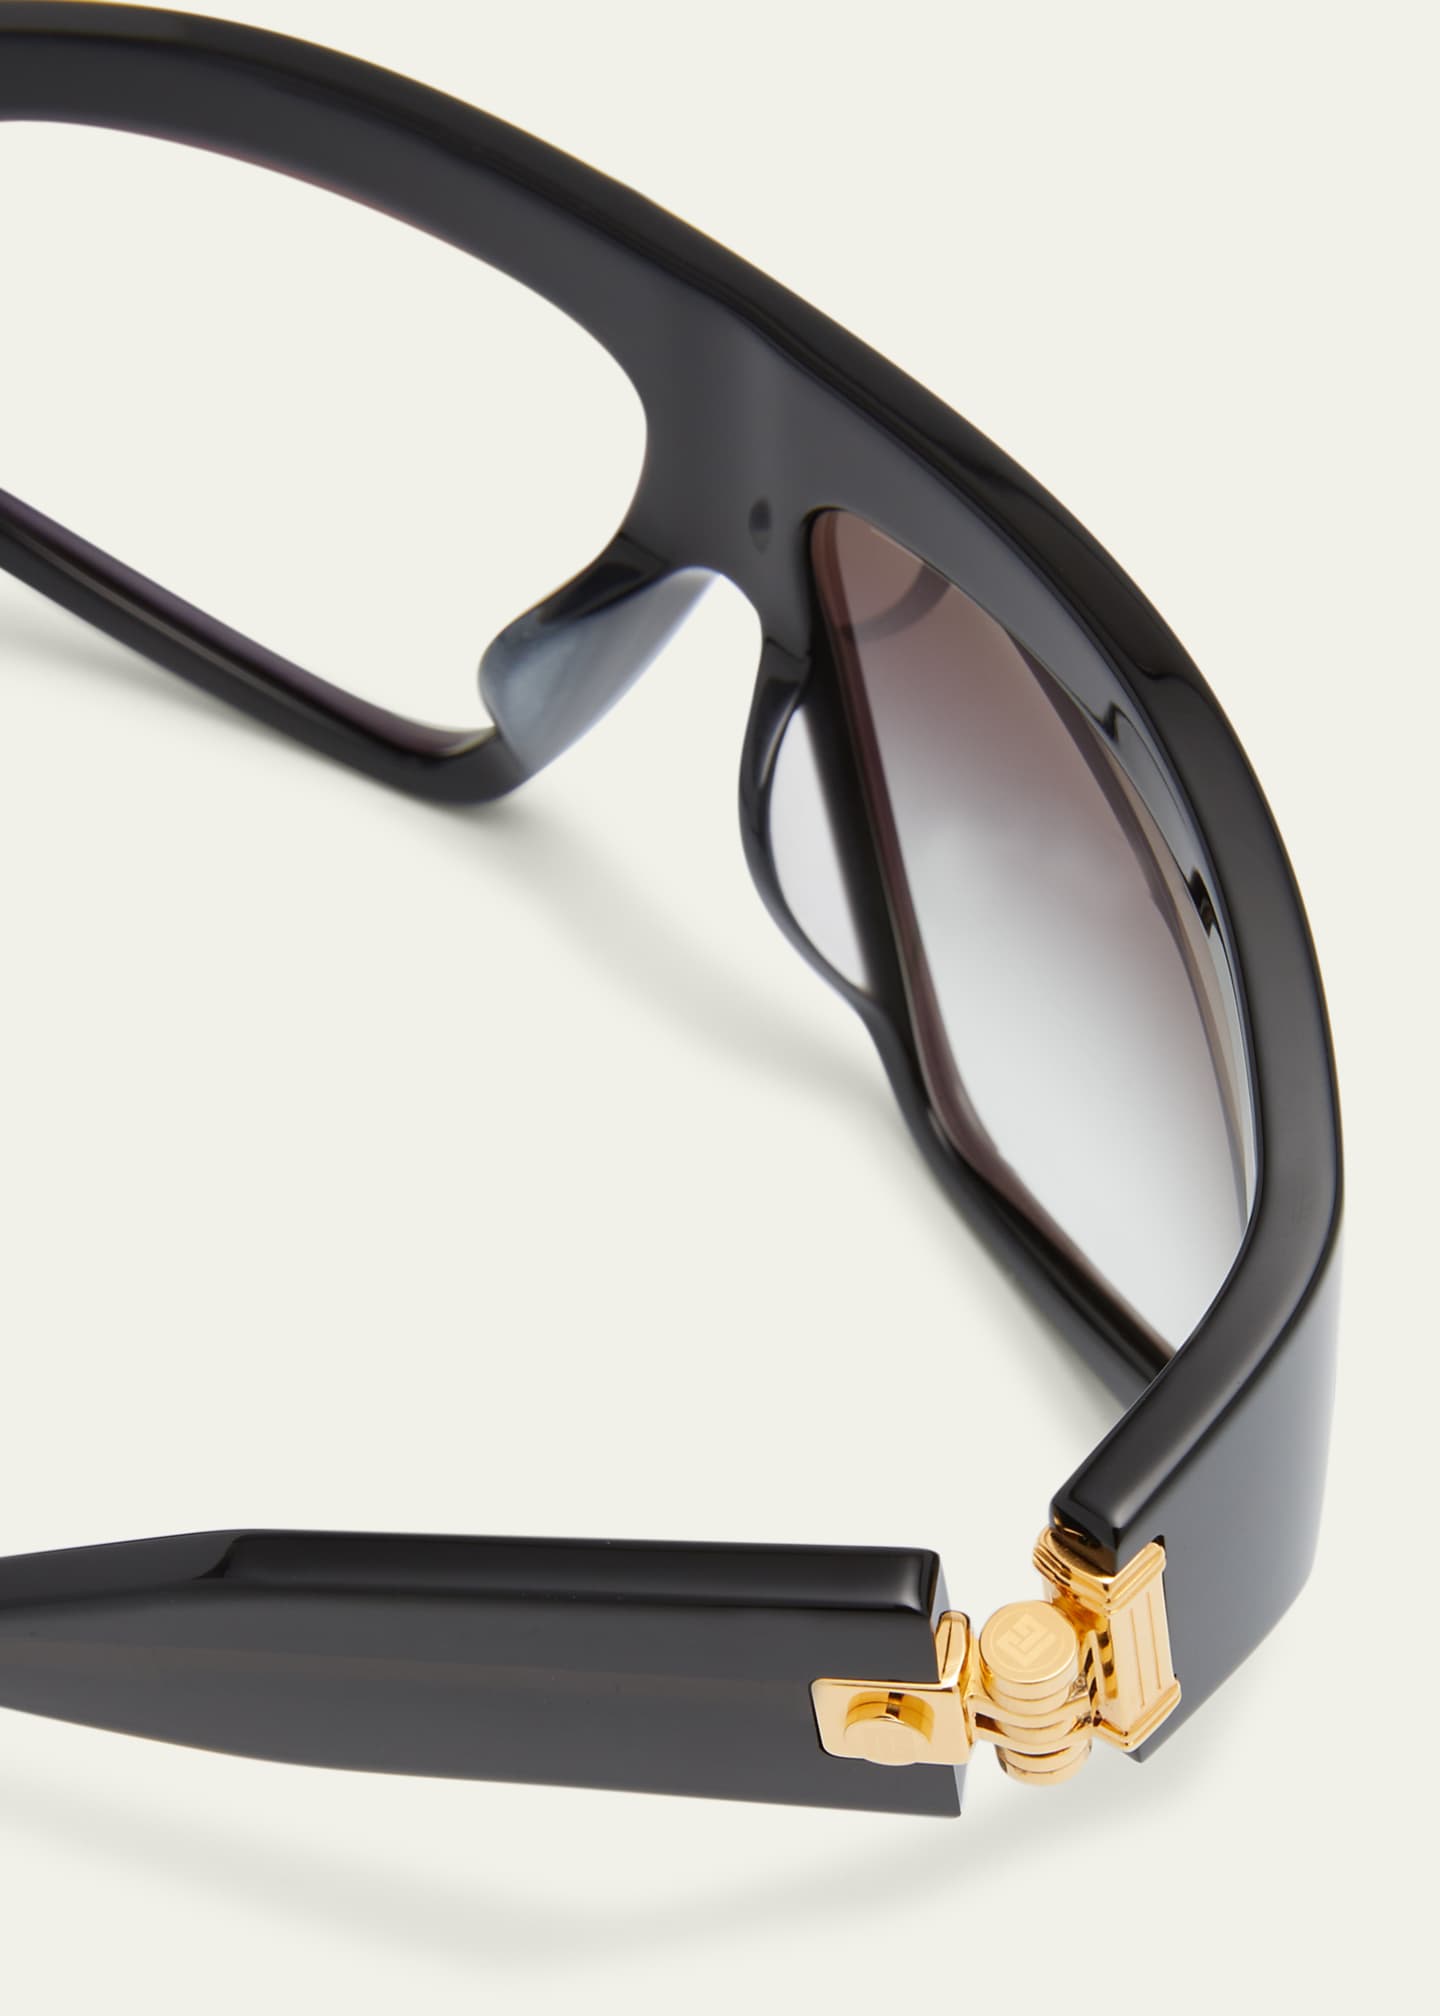 Brand New Louis Vuitton Escape Square Sunglasses